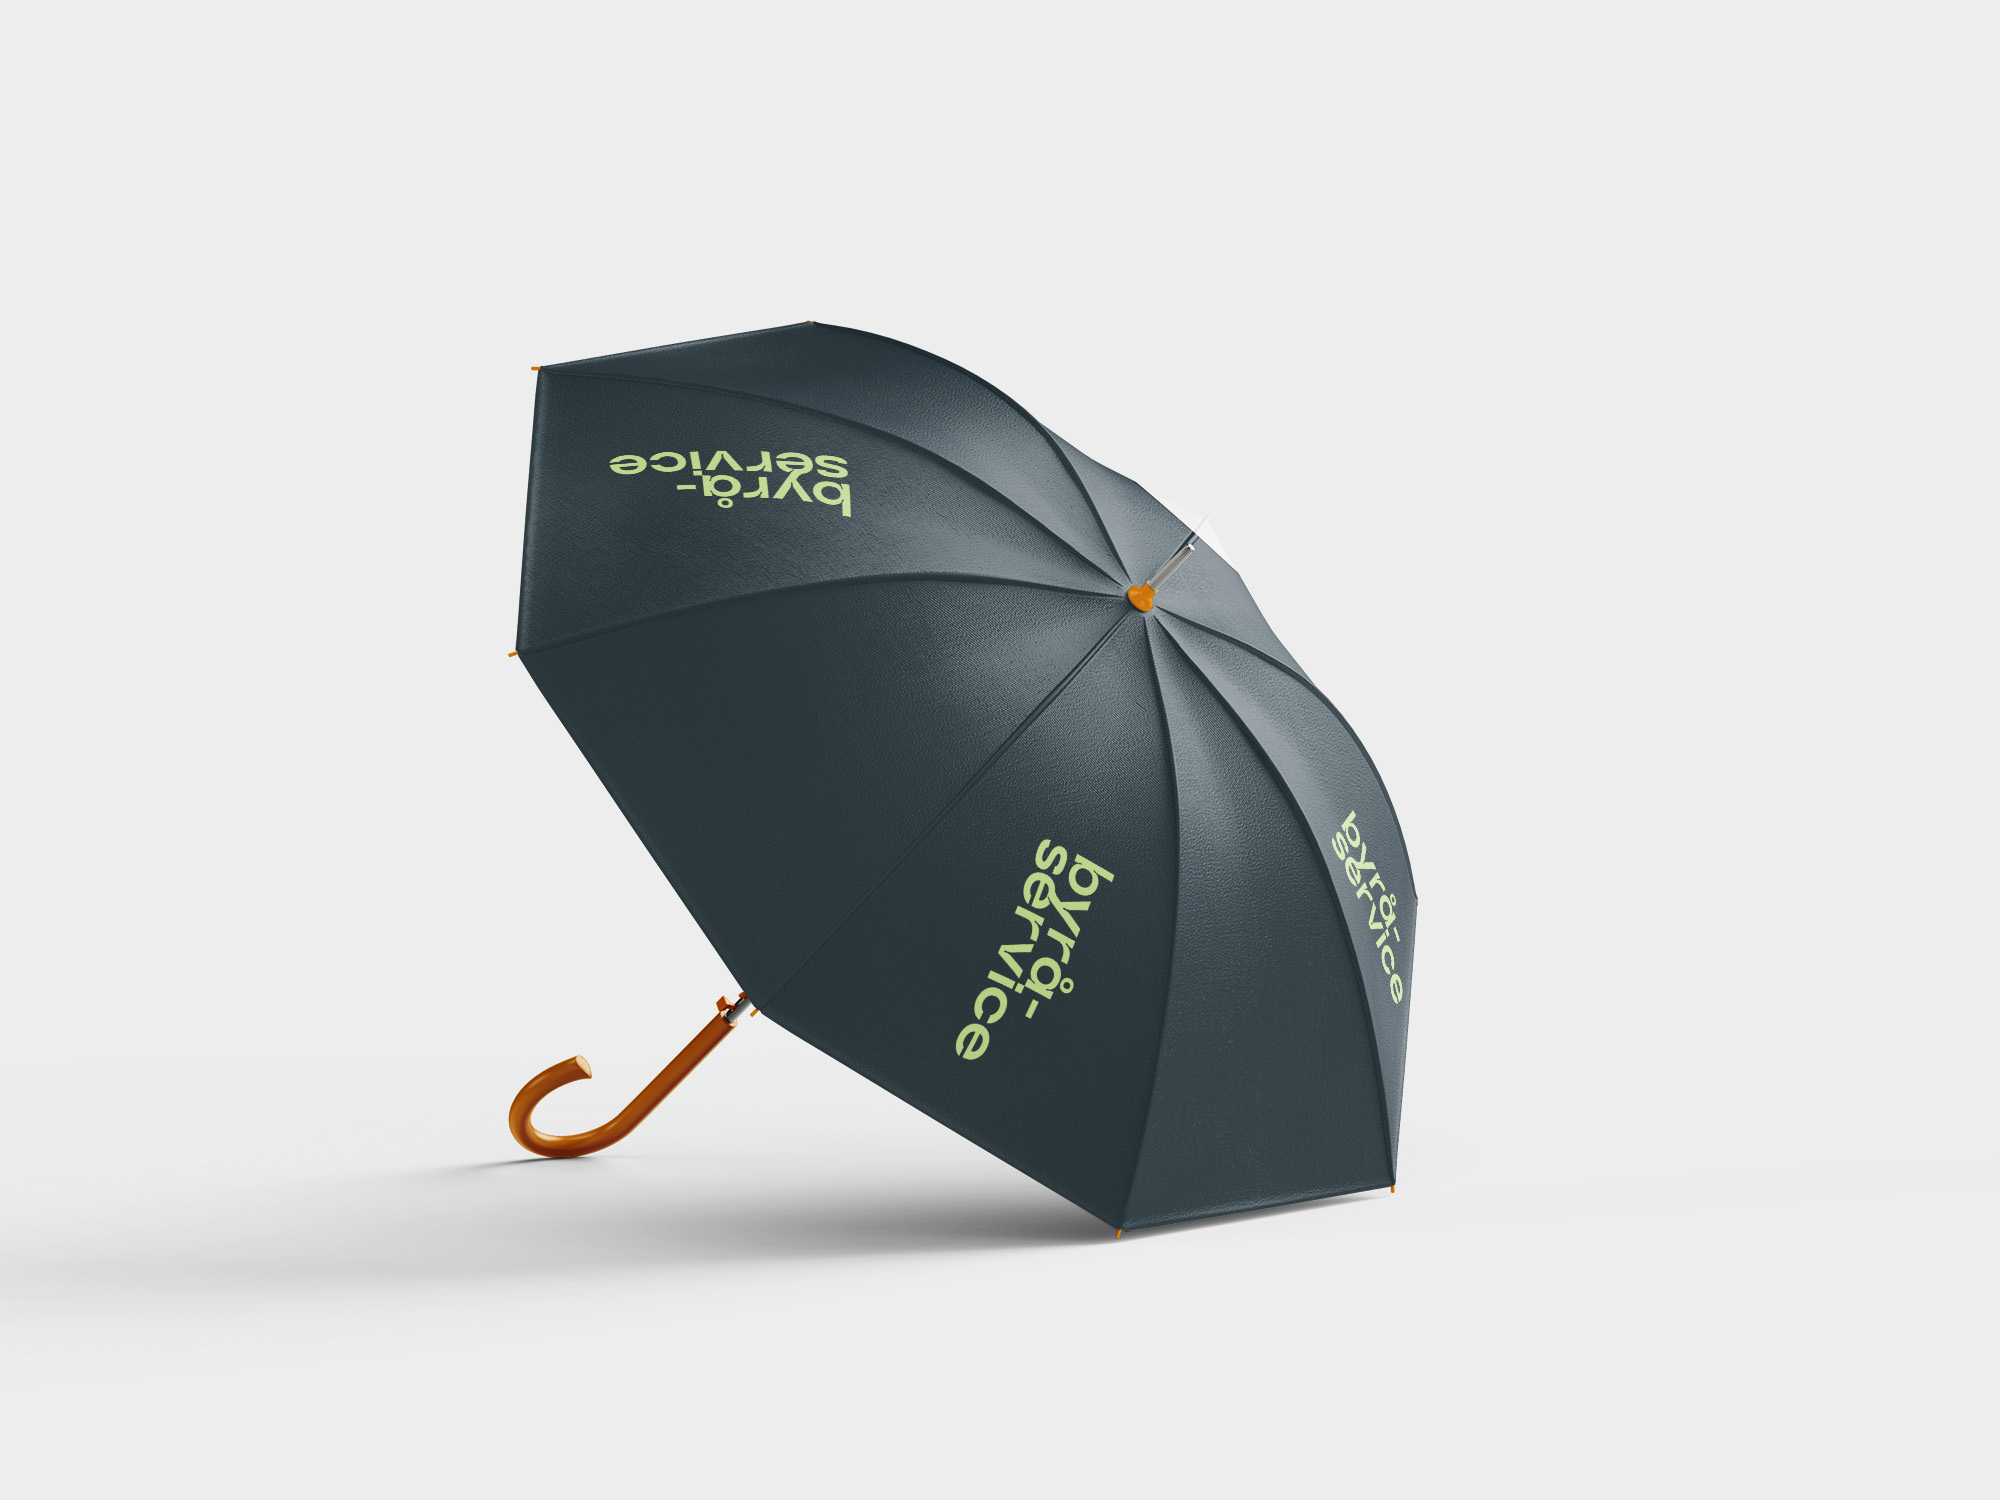 Paraply med Byråservice logo